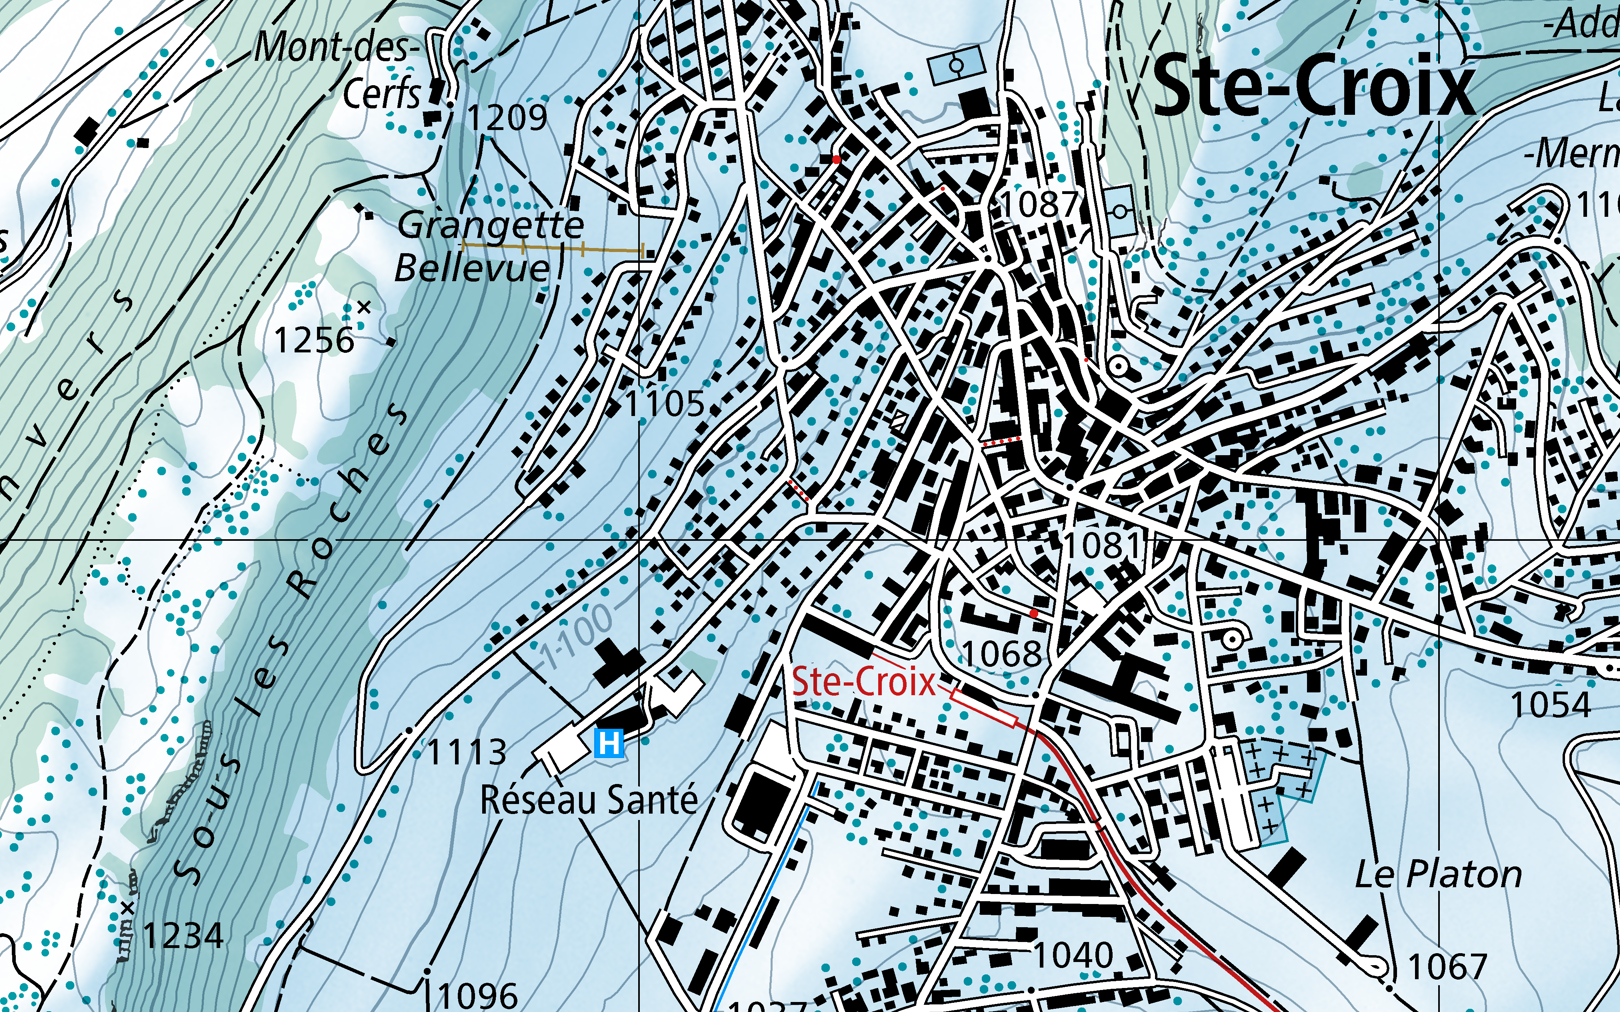 L'immagine mostra una sezione di una mappa di Ste-Croix con colori invernali.